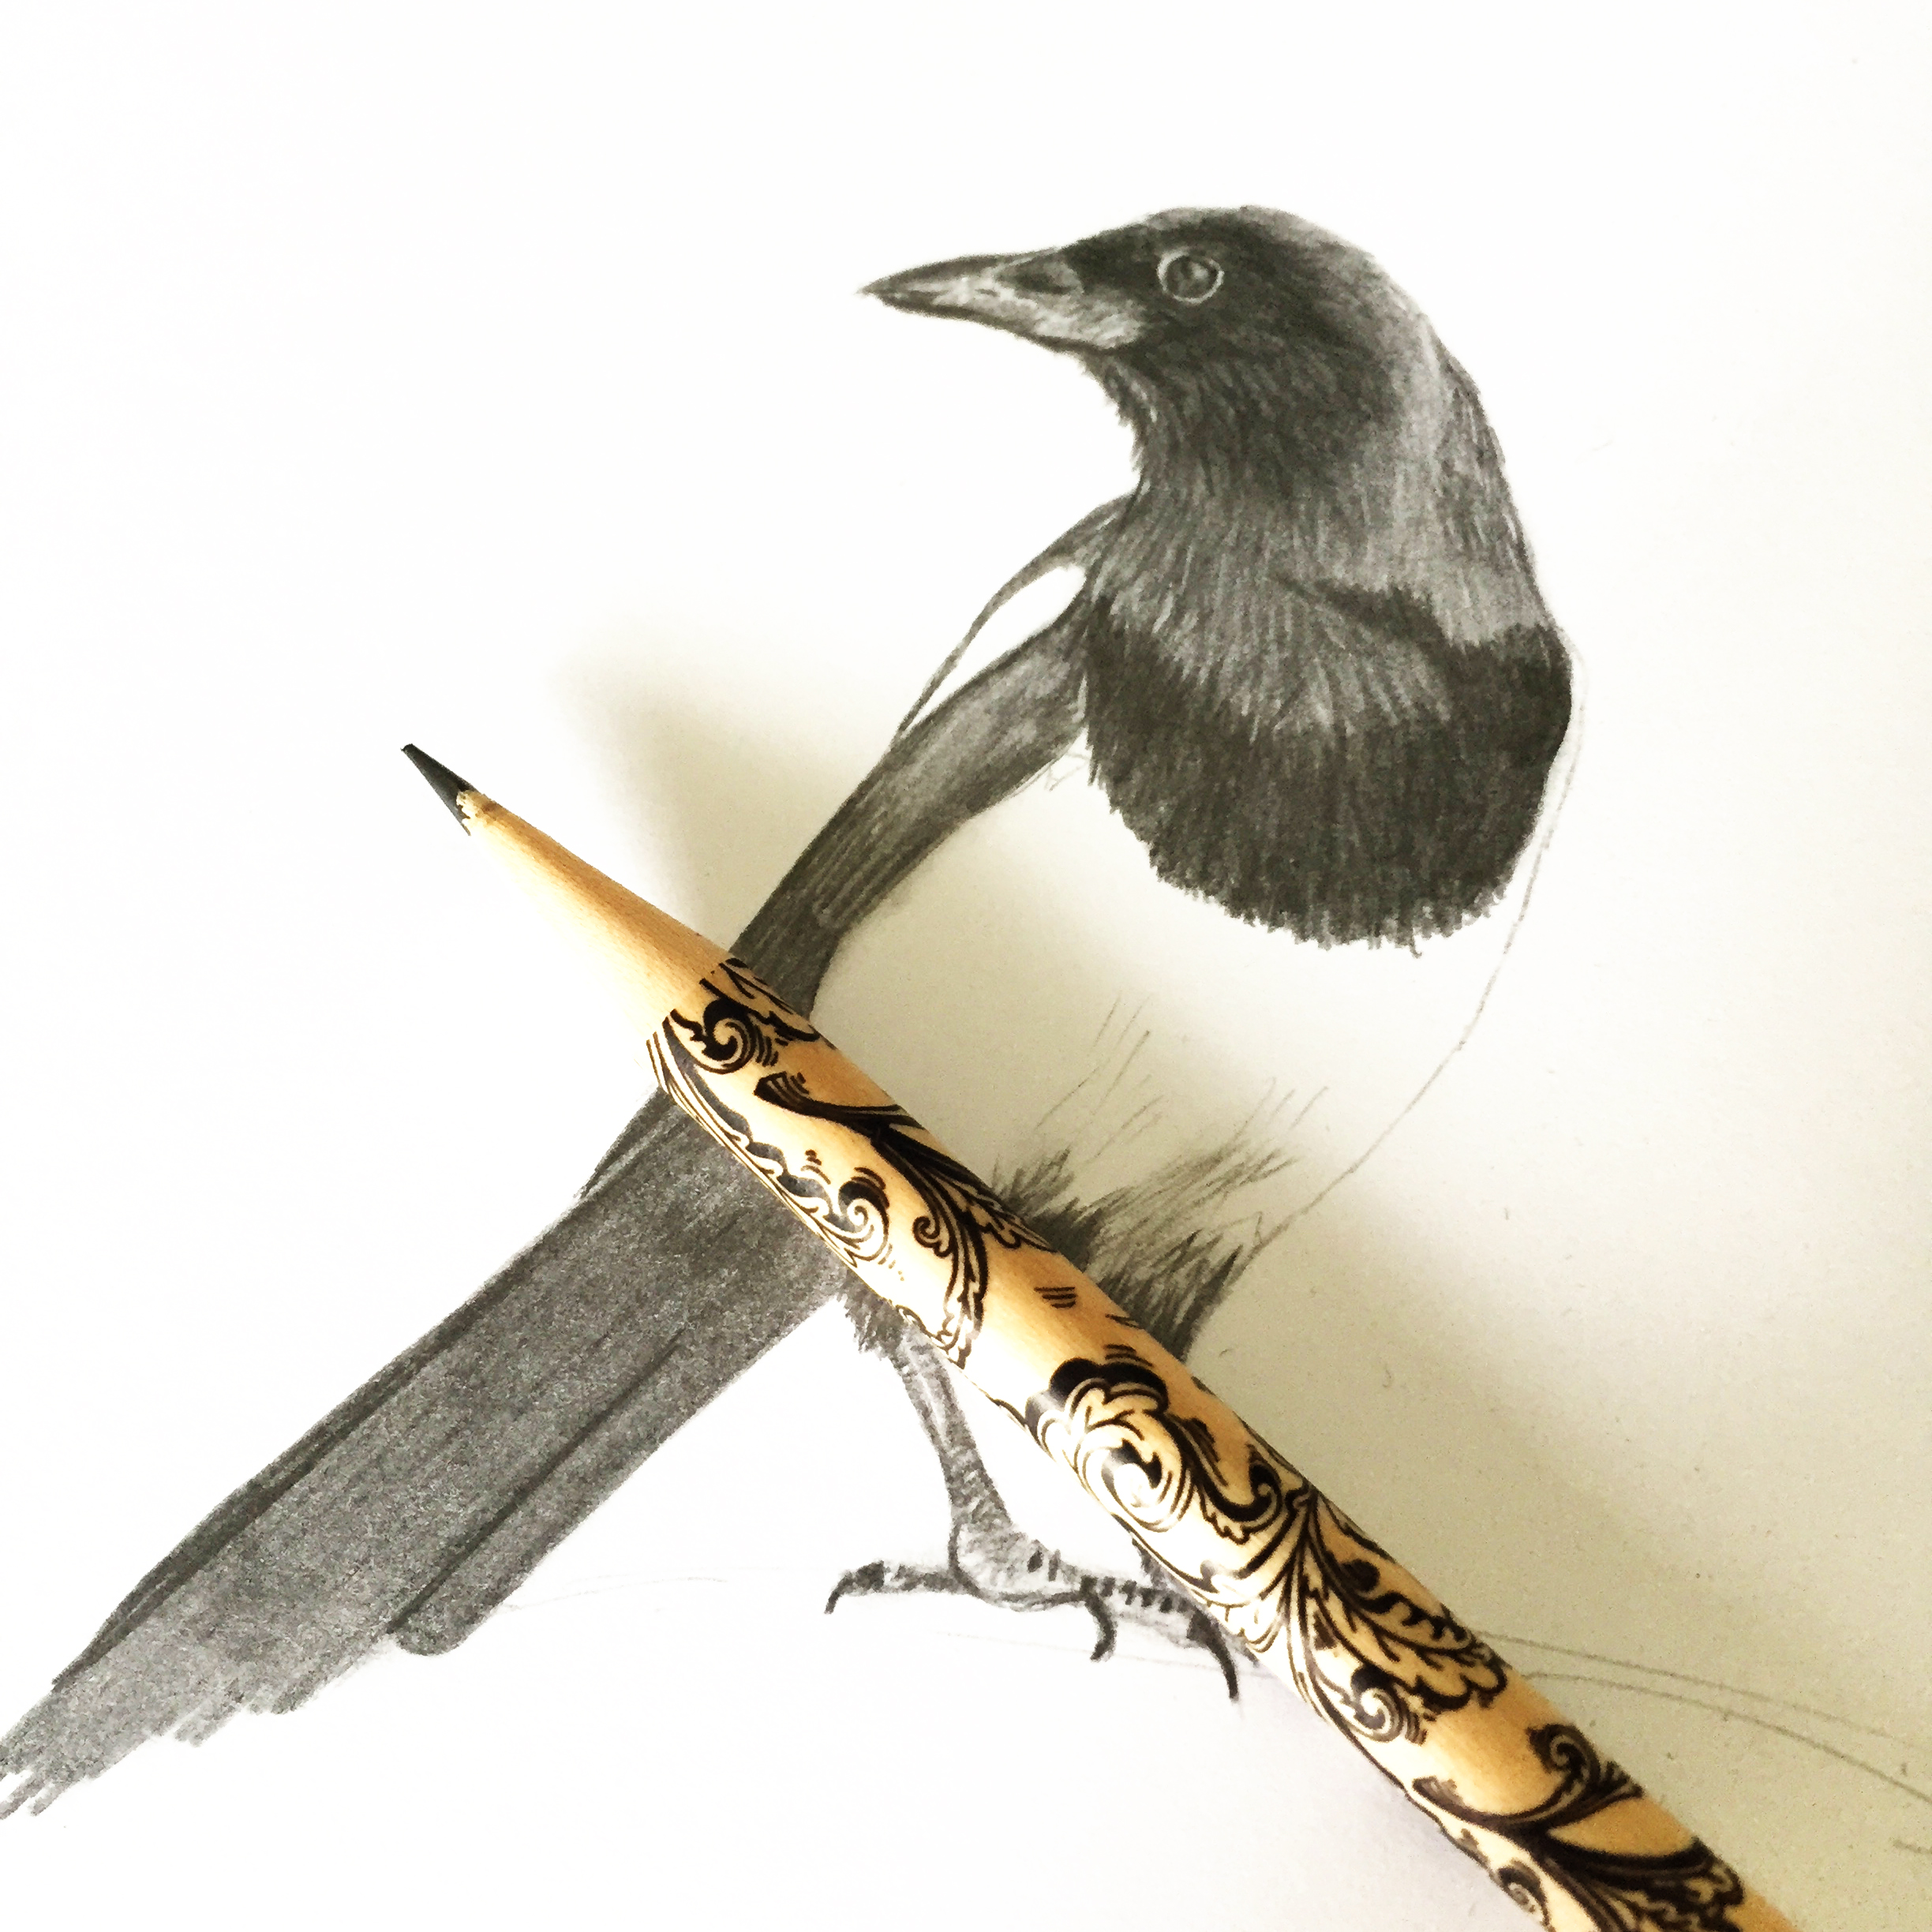 A pencil sketch of a magpie